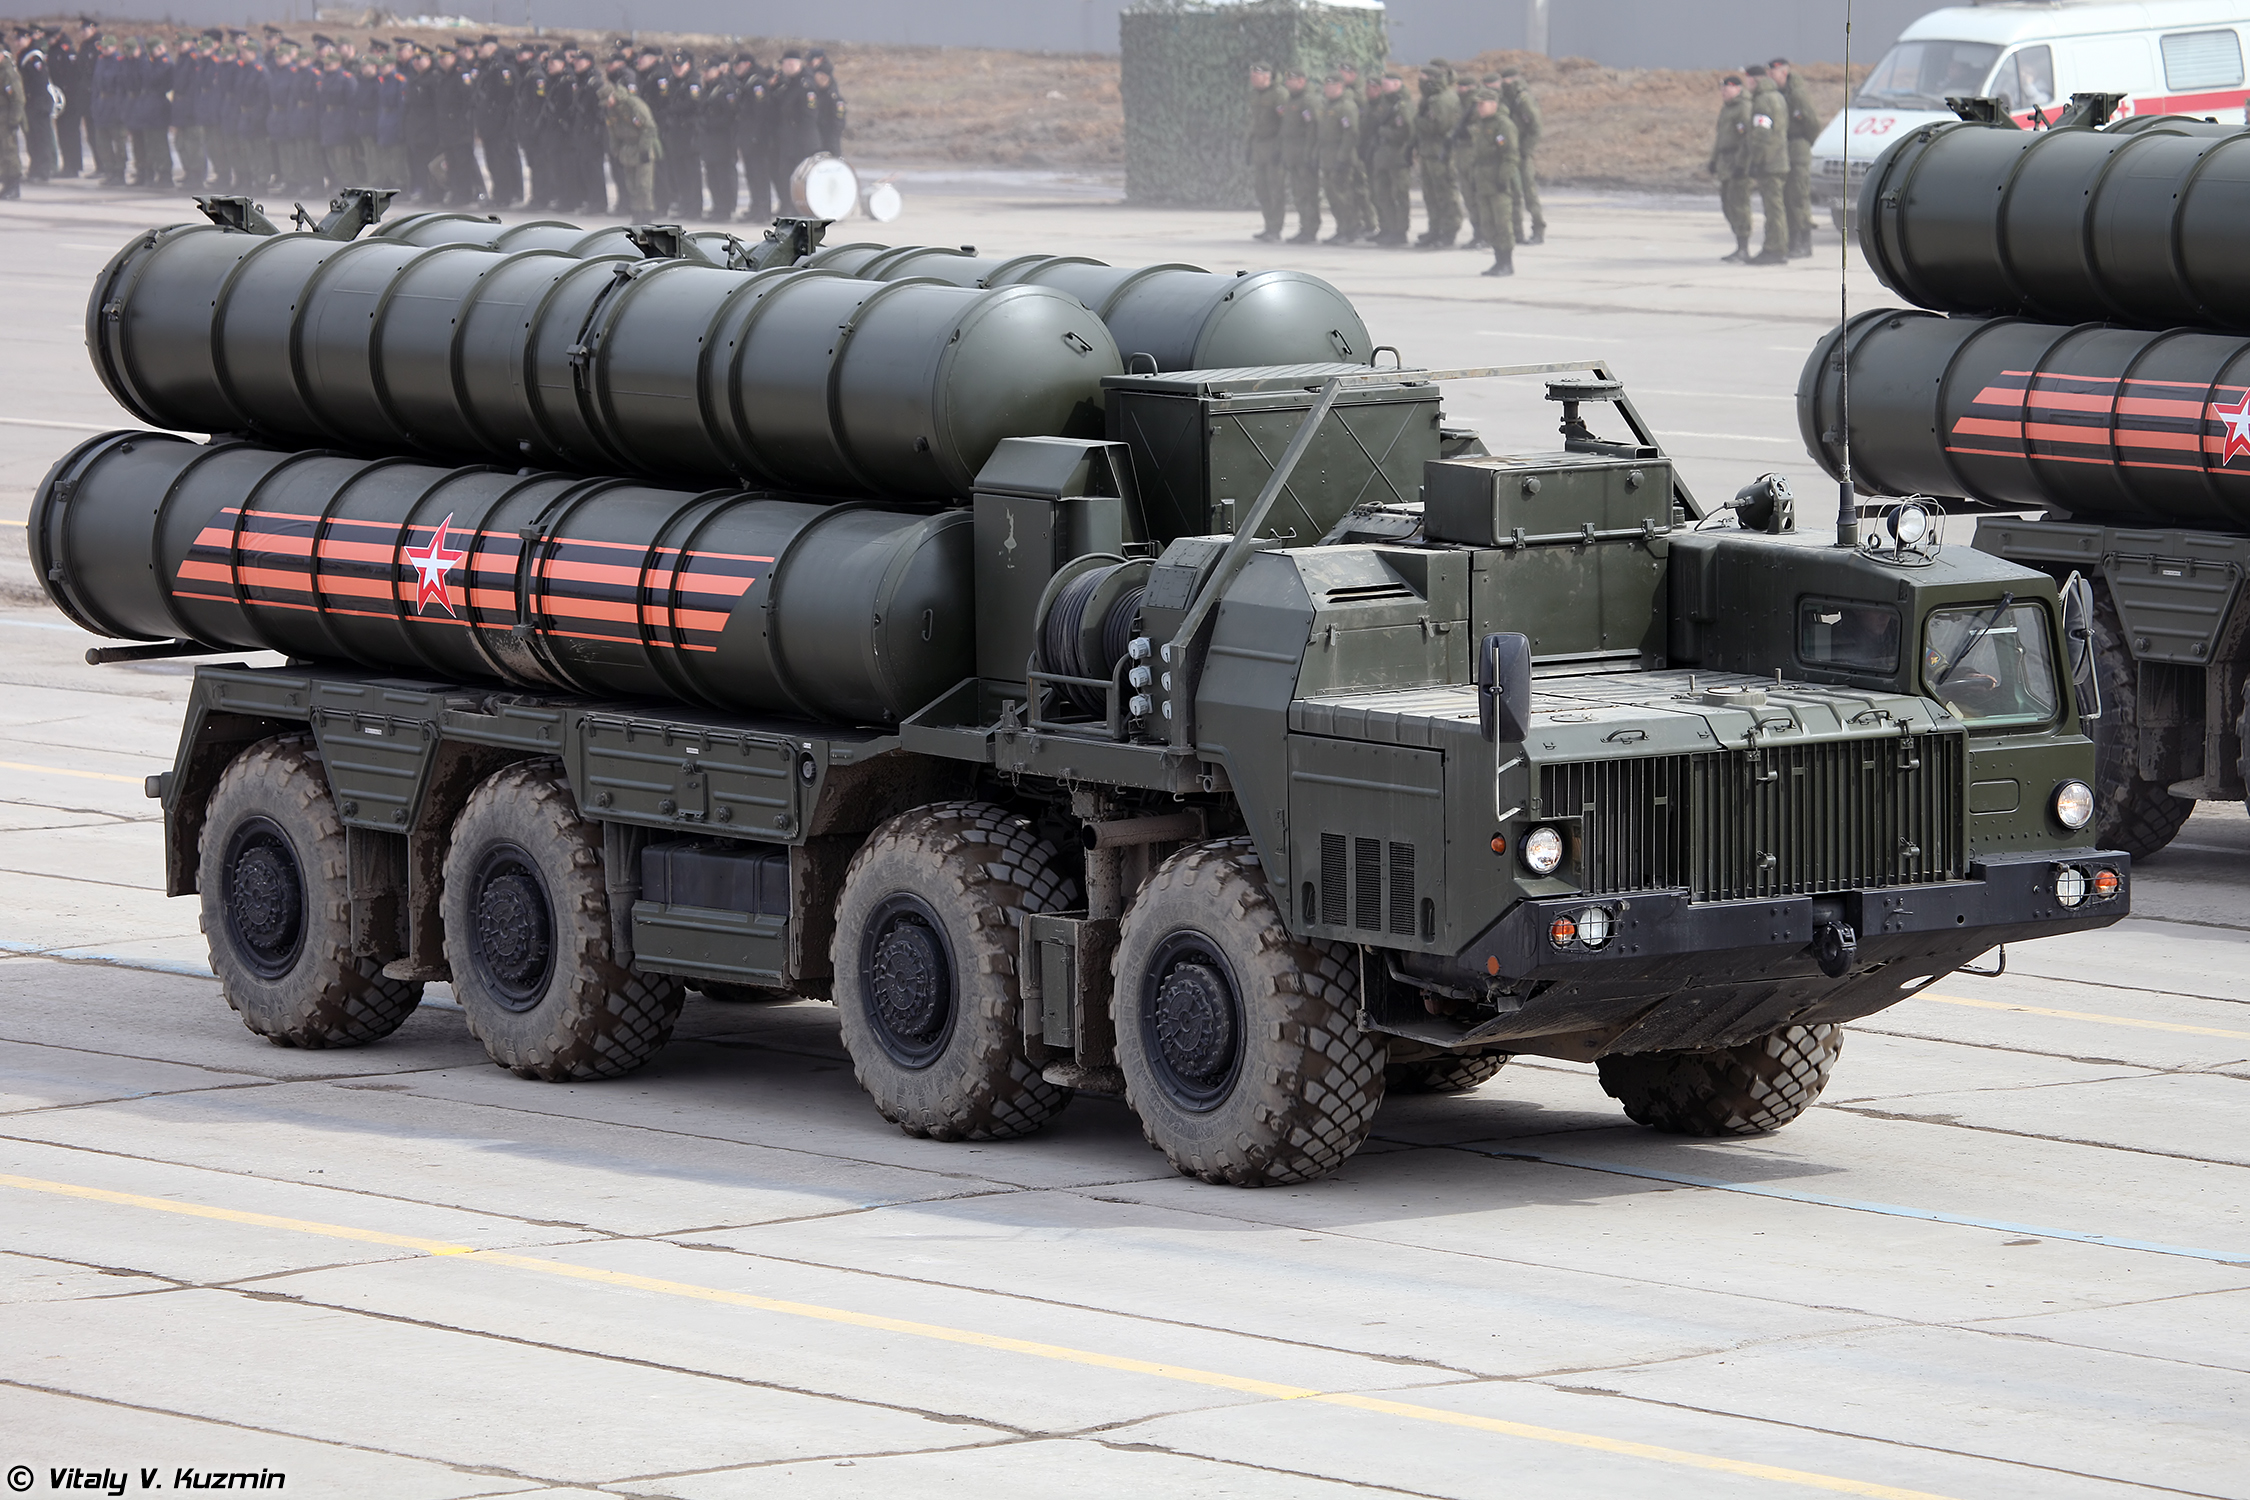 Ruslands S-400 luchtverdedigingssysteem "faalt" in gevechten, omdat zelfs oude westerse wapens het kunnen verslaan